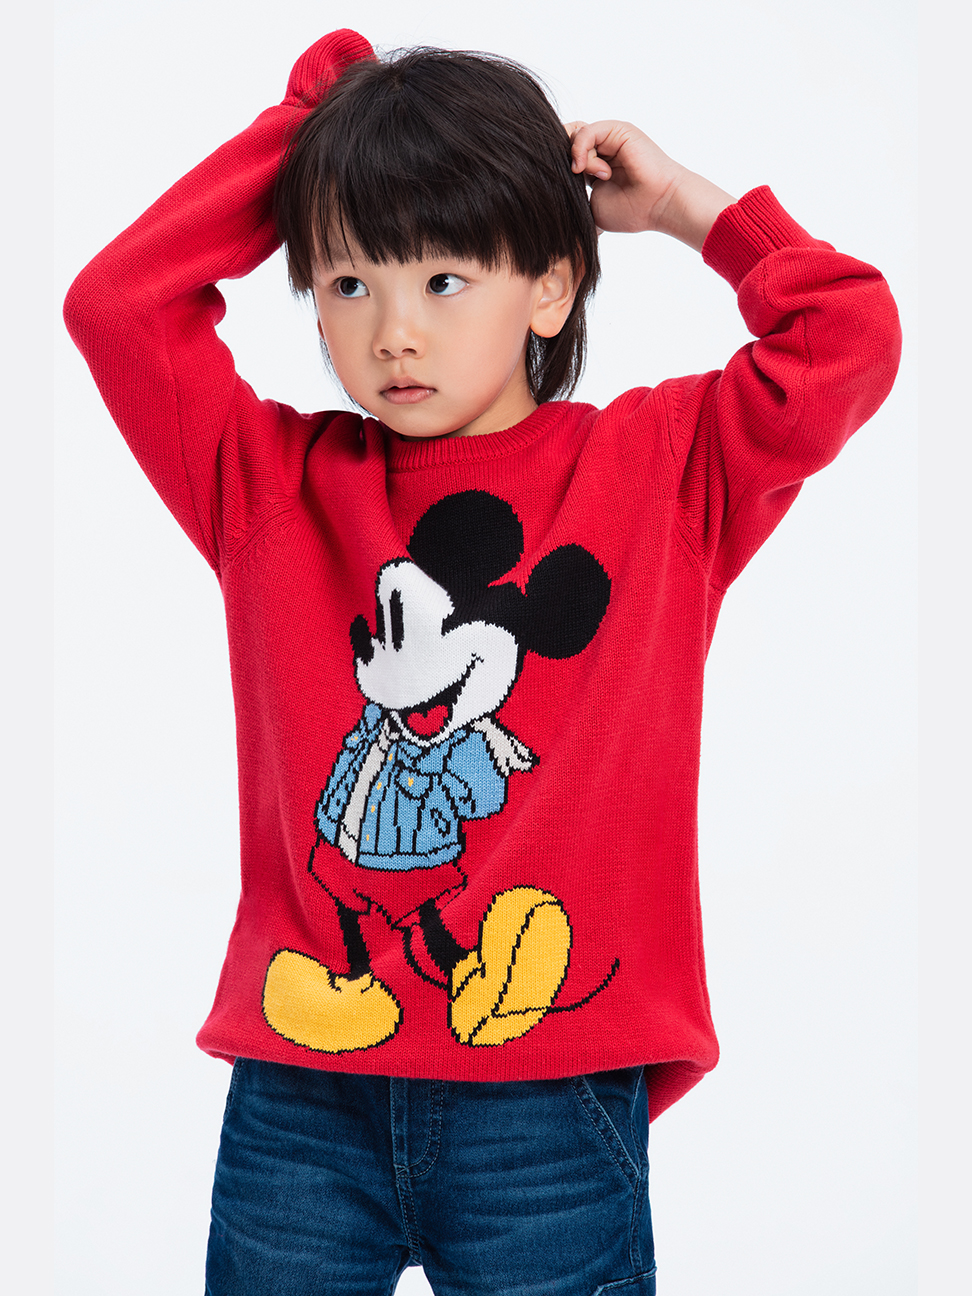 男童裝|Gap x Disney迪士尼聯名 米奇棉質圓領針織衫-摩登紅色